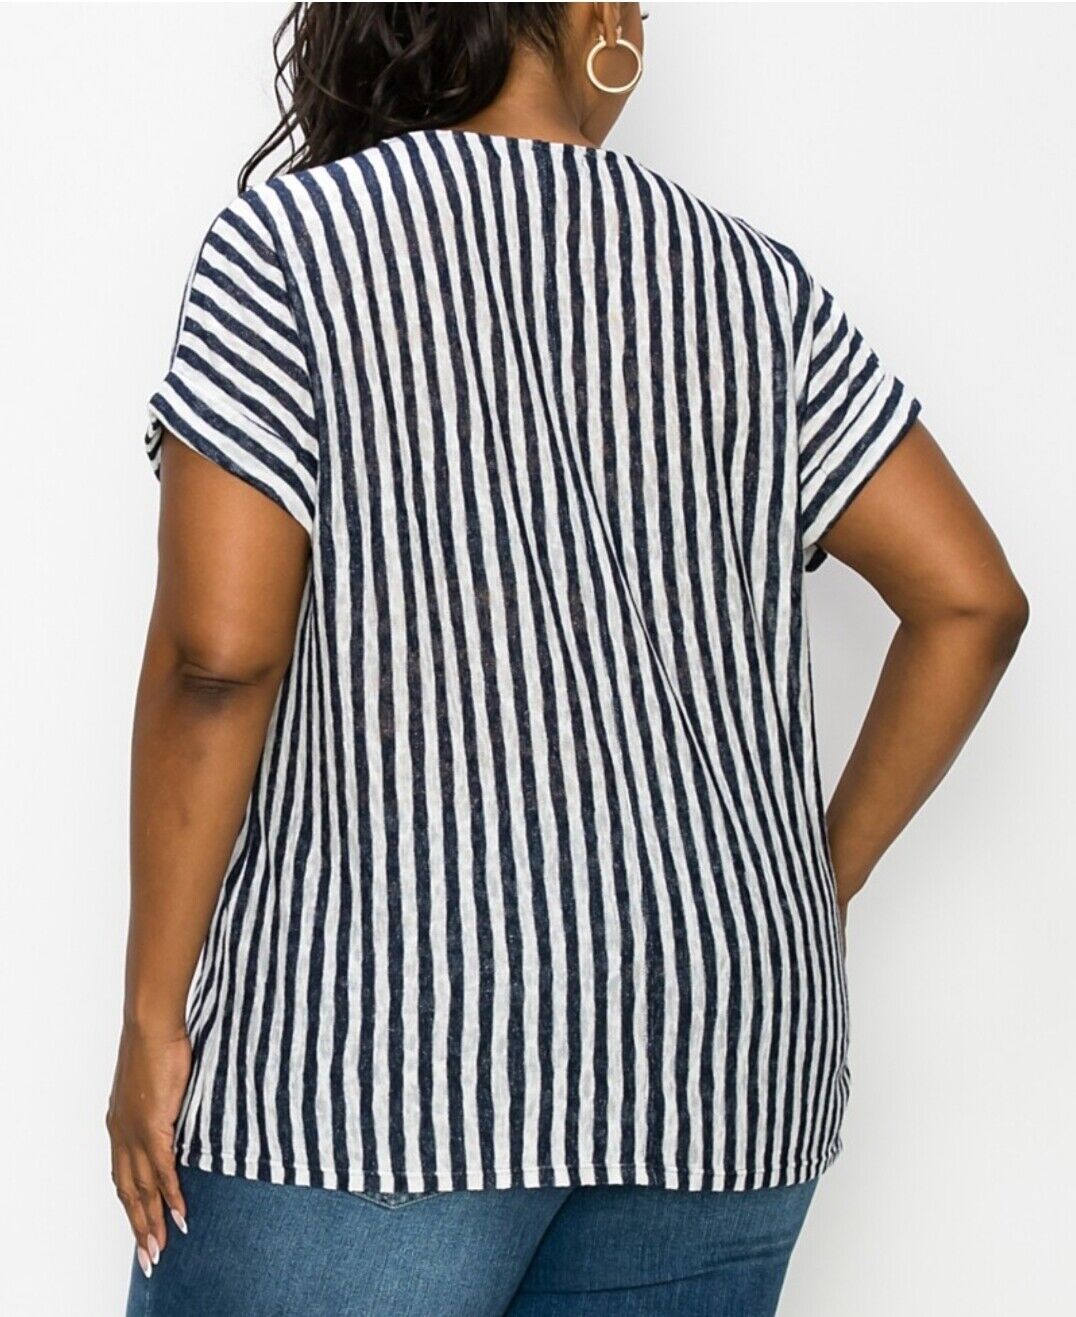 COIN 1804 Women's Stripe Yoke Dolman Top White-Navy Short Sleeve Plus Size 3X